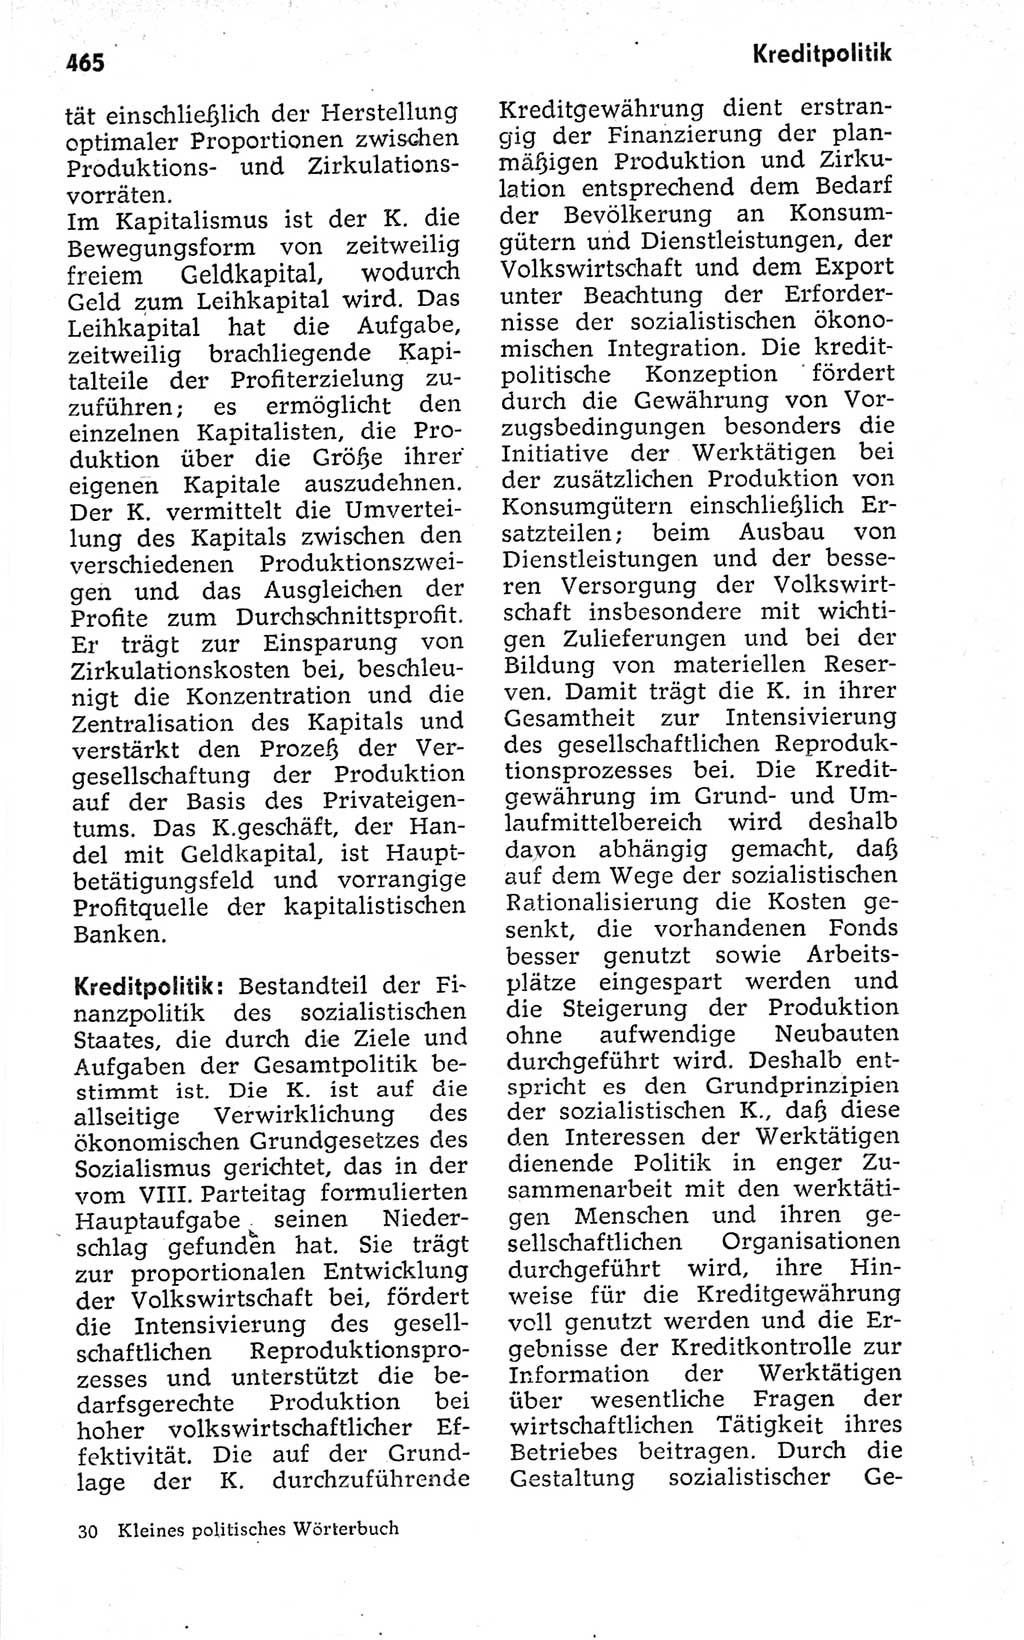 Kleines politisches Wörterbuch [Deutsche Demokratische Republik (DDR)] 1973, Seite 465 (Kl. pol. Wb. DDR 1973, S. 465)